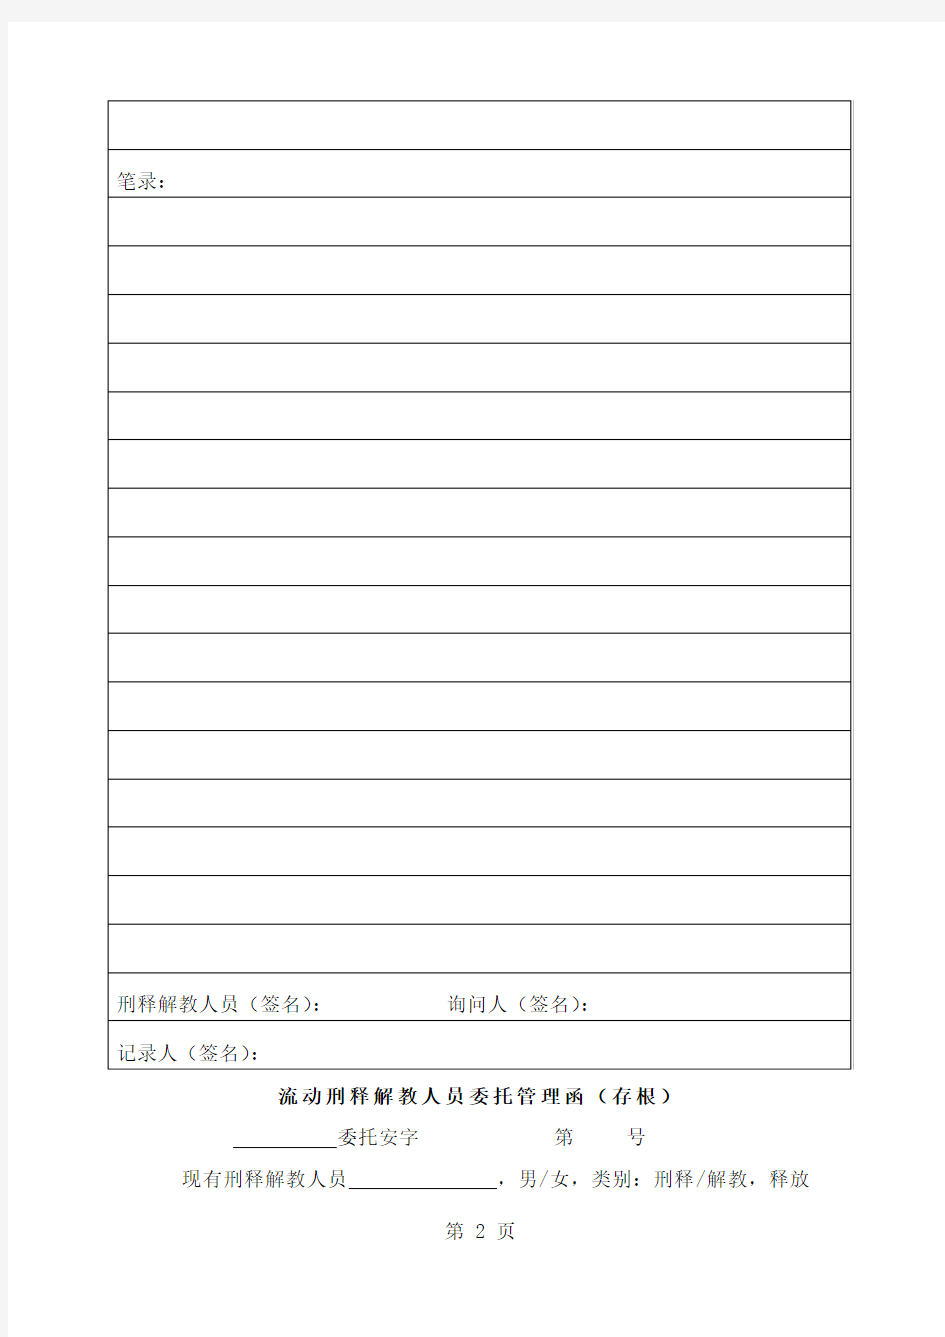 广东省司法所规范化建设指引共70页